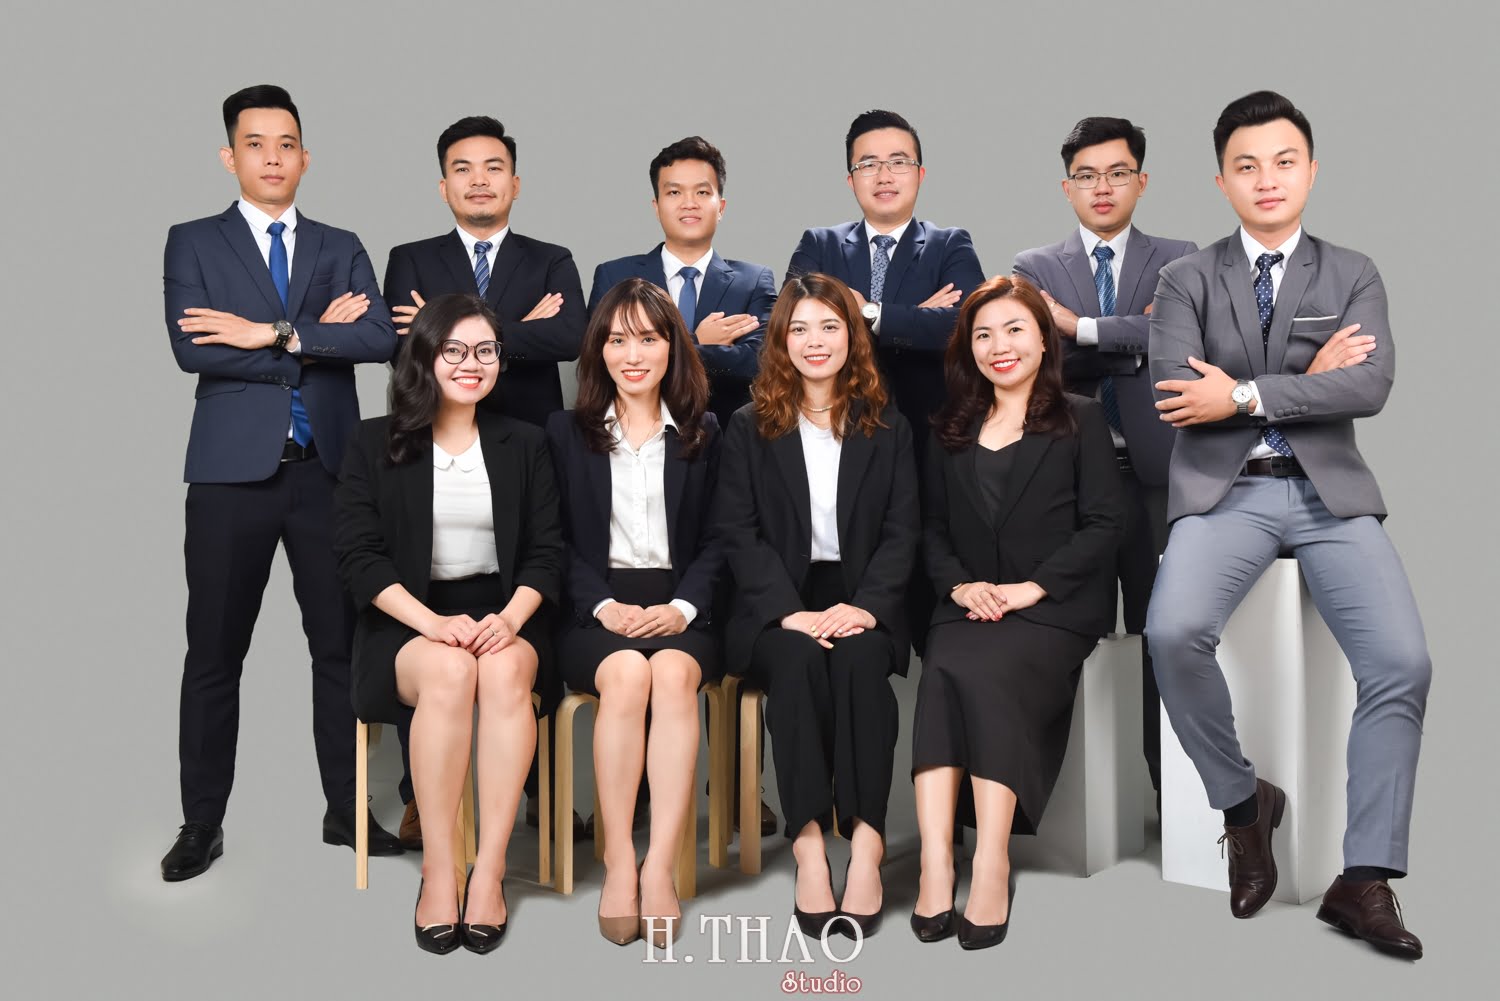 Anh profile cong ty 16 - #3 concept chụp ảnh công ty chuyên nghiệp nhất hiện nay – HThao Studio